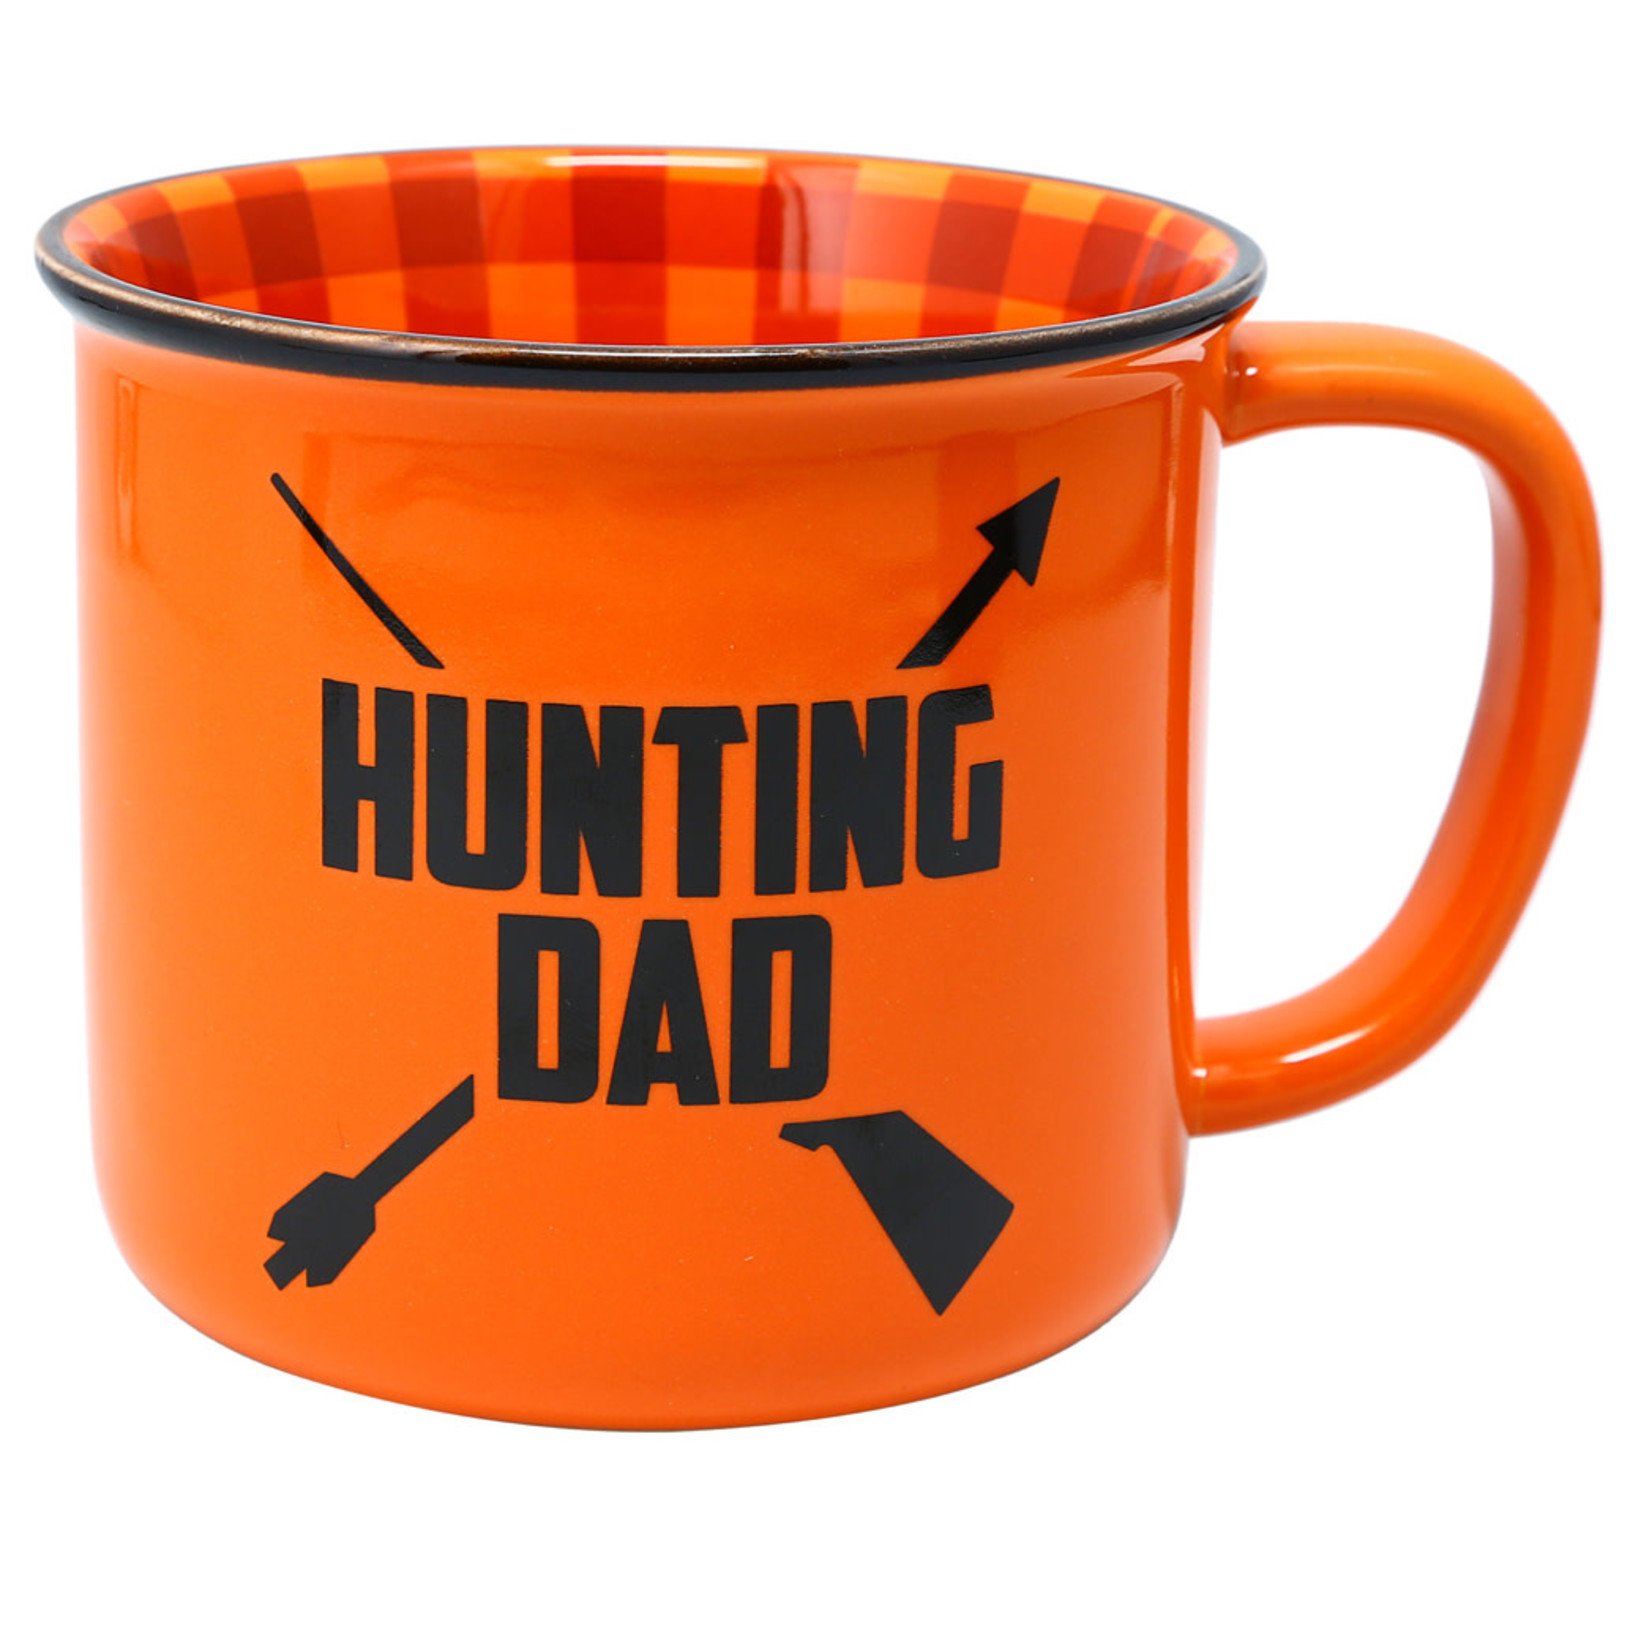 Hunting Dad - 18 oz Mug